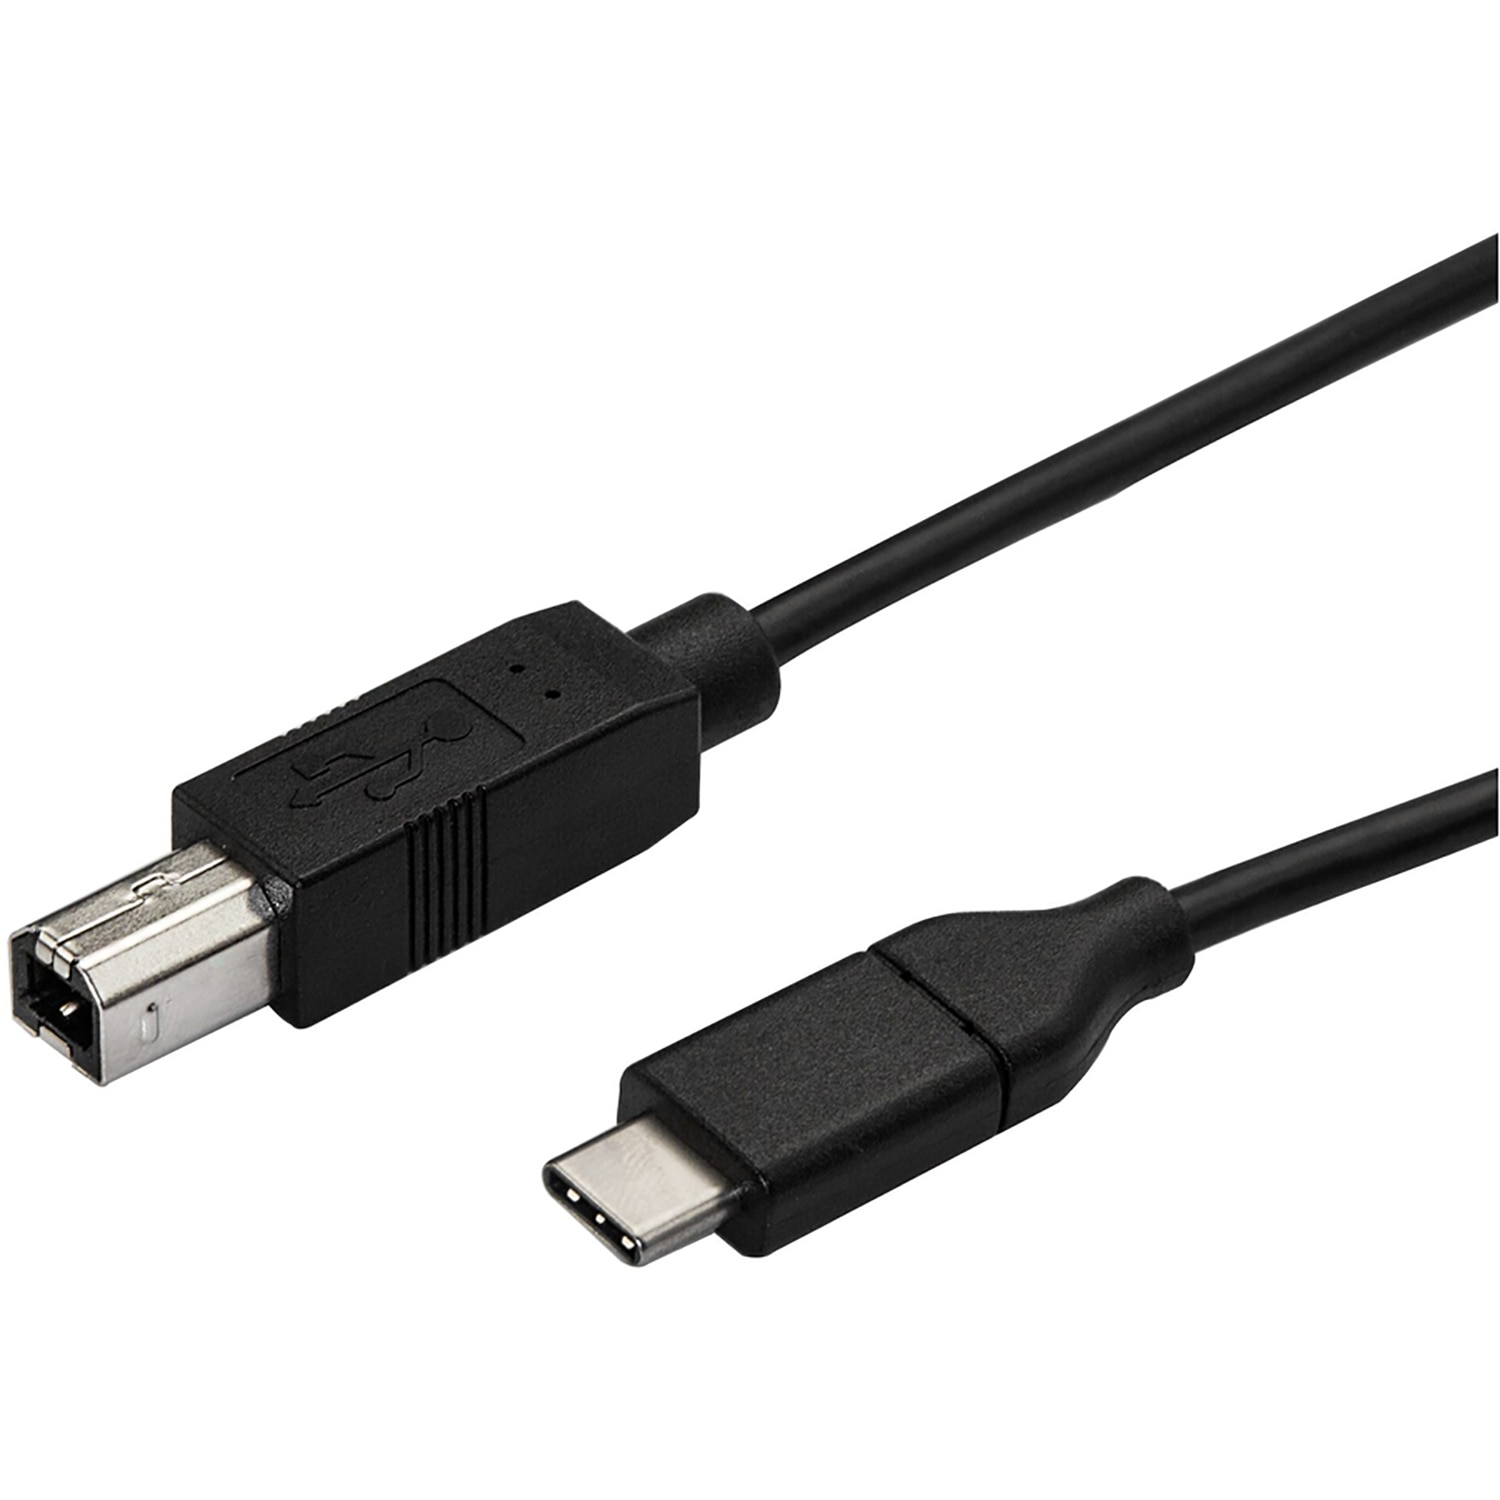 USB-C to USB-B PRINTER CABLE